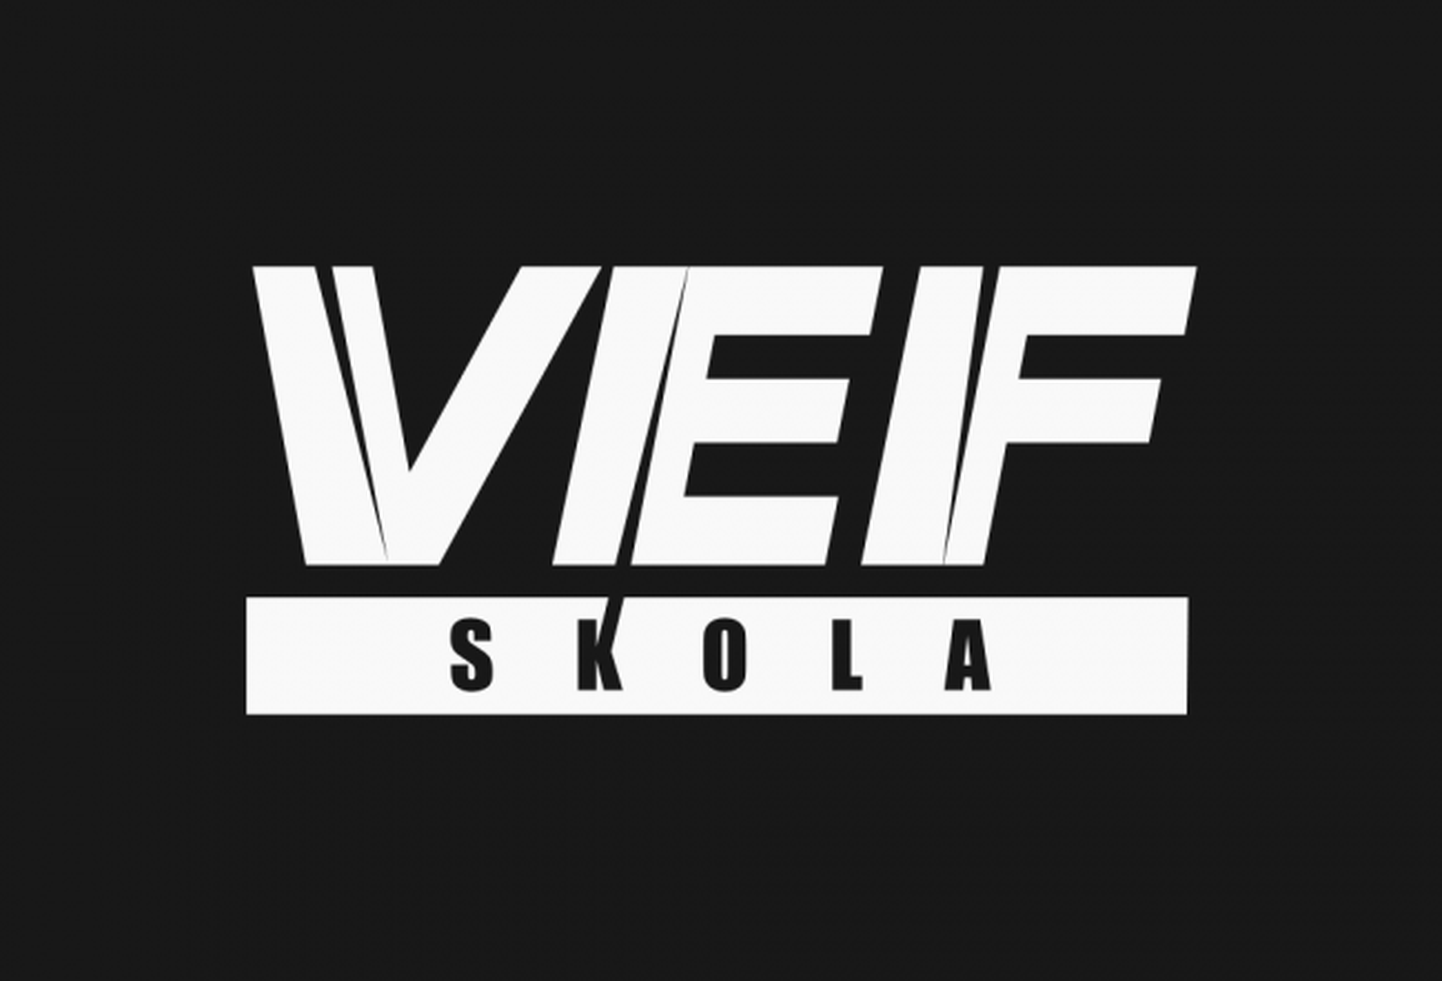 "VEF skolas" logo.